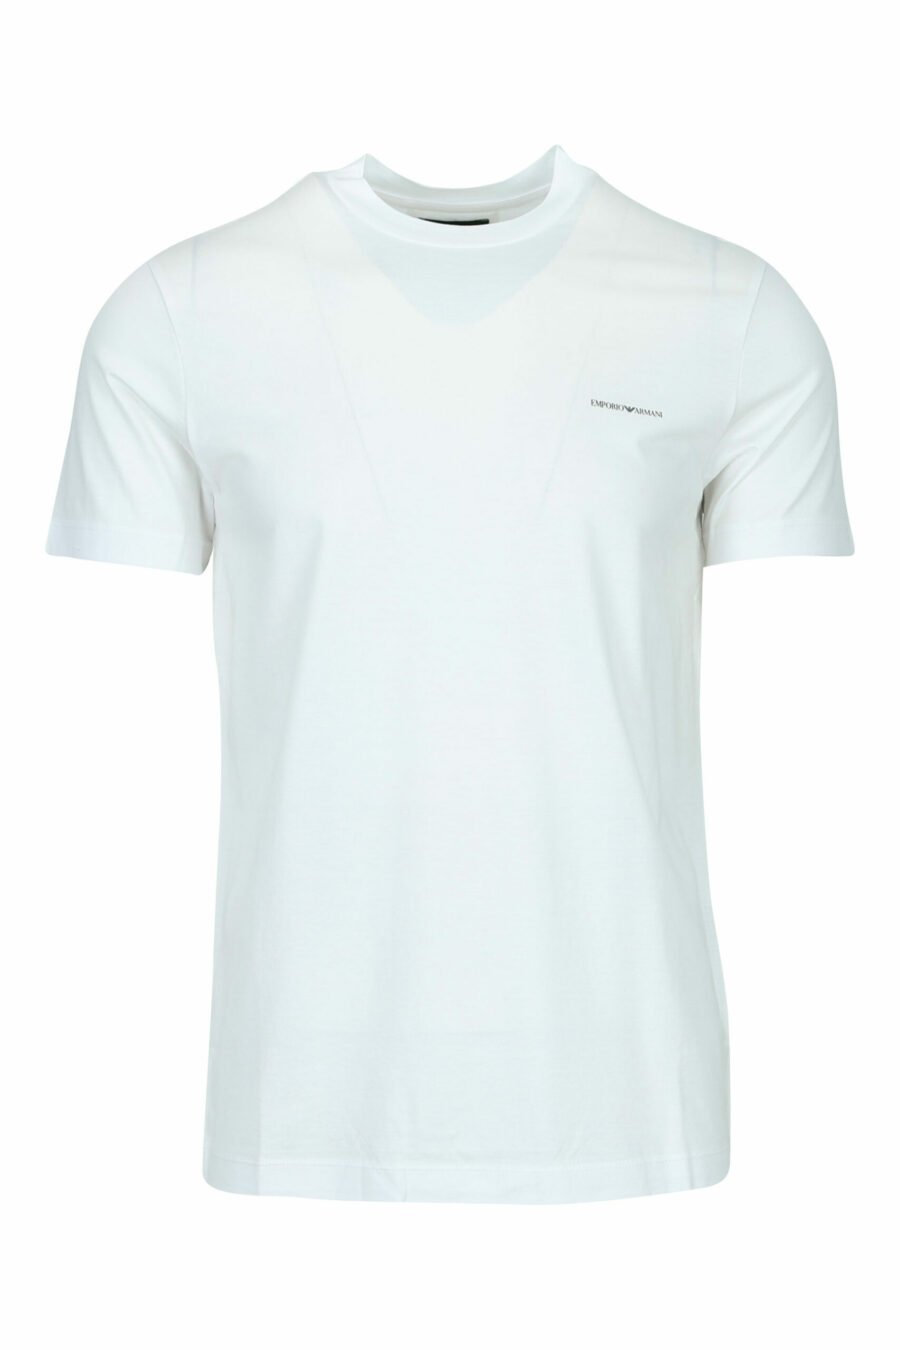 Weißes T-Shirt mit Minilogo "emporio" - 8059516200147 skaliert